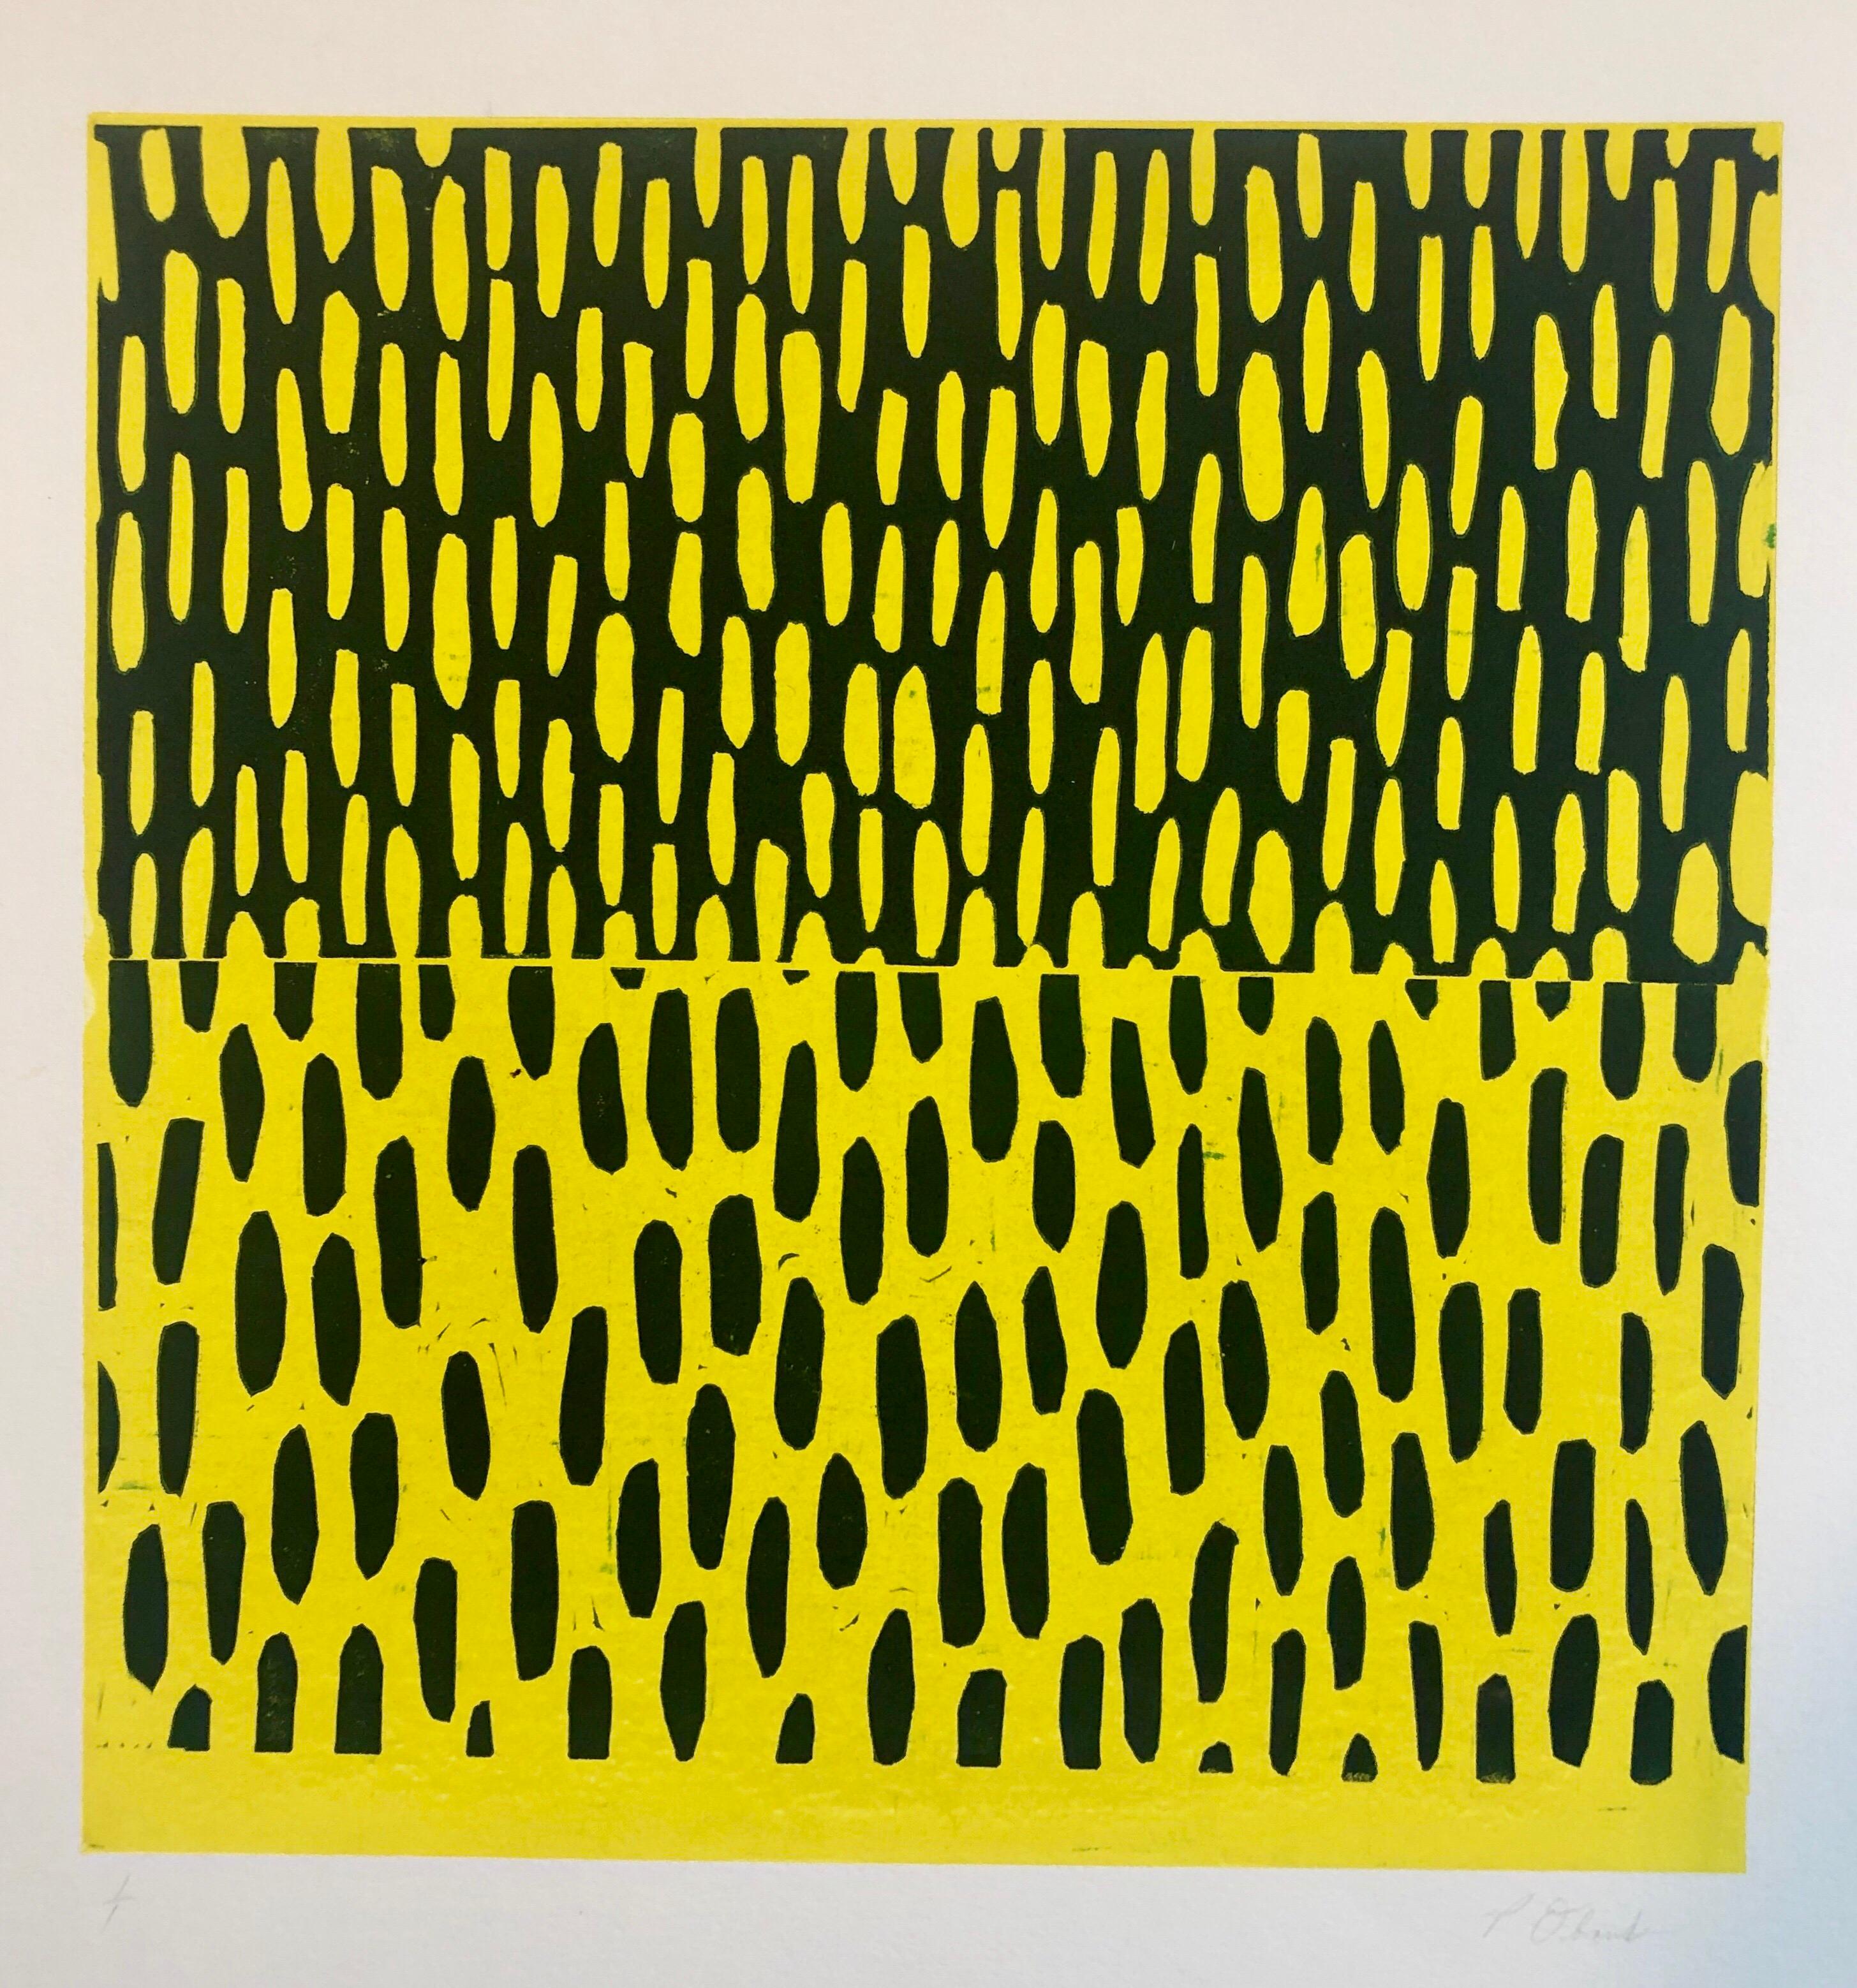 Impression monotype de peinture expressionniste abstraite moderniste jaune et bleue